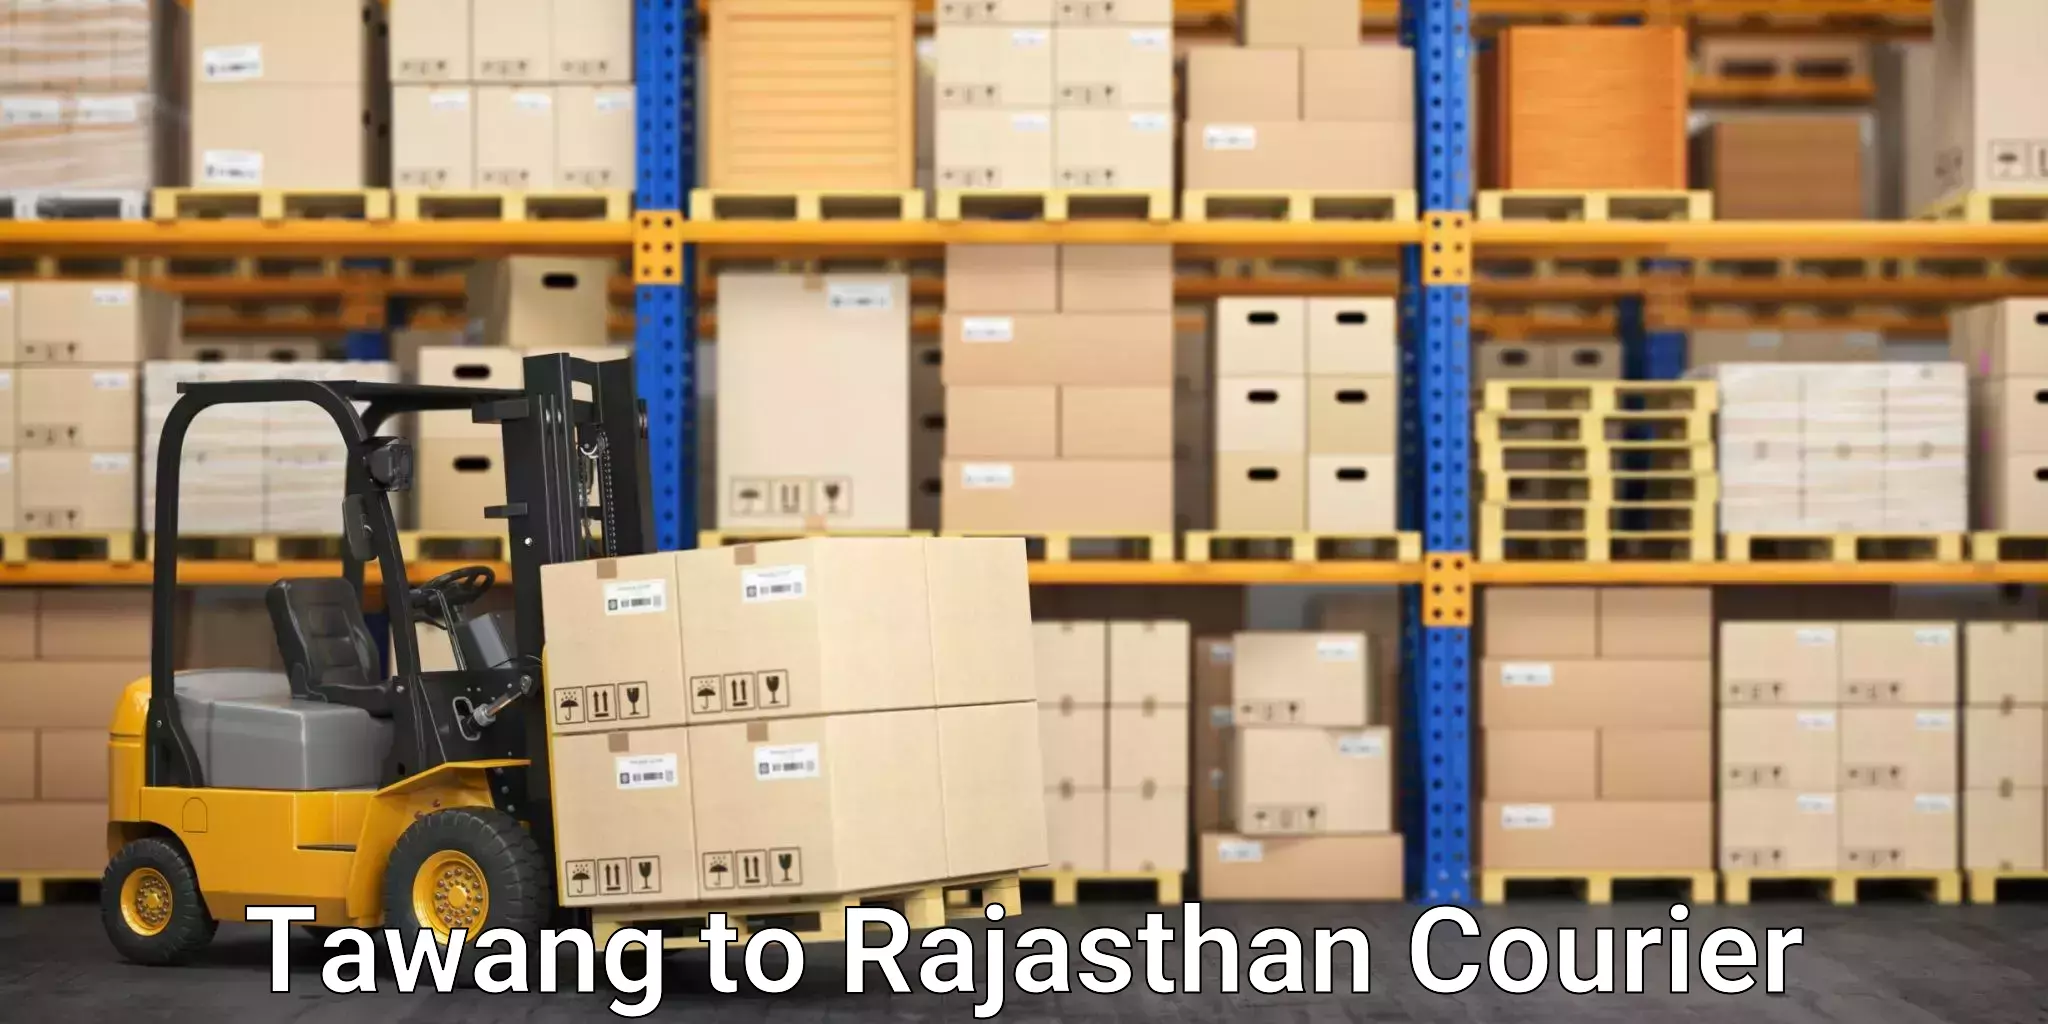 Fast shipping solutions Tawang to Jhalawar